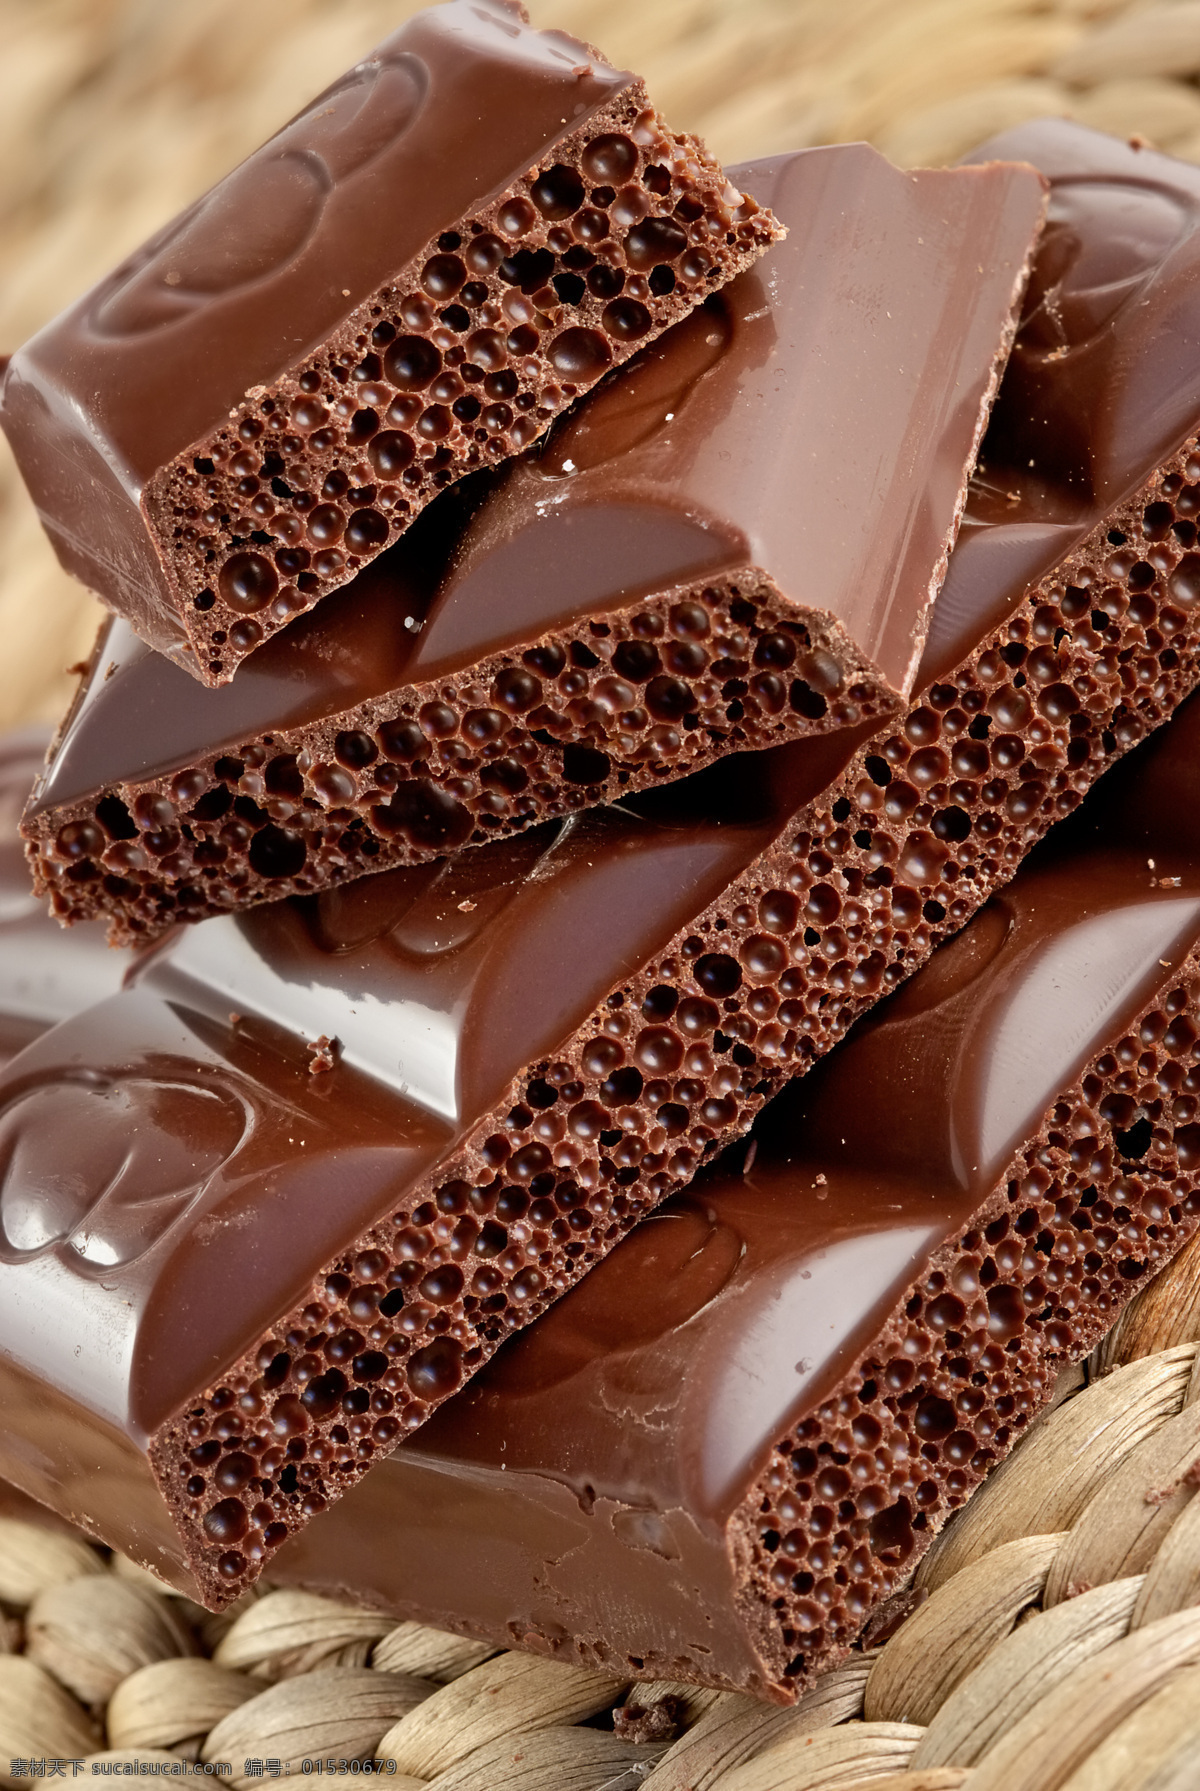 可口巧克力 甜食 巧克力糖果 巧克力 黑巧克力 牛奶巧克力 一块巧克力 格子巧克力 方片巧克力 朱古力 纯巧克力 巧克力碎屑 巧克力背景 黑色